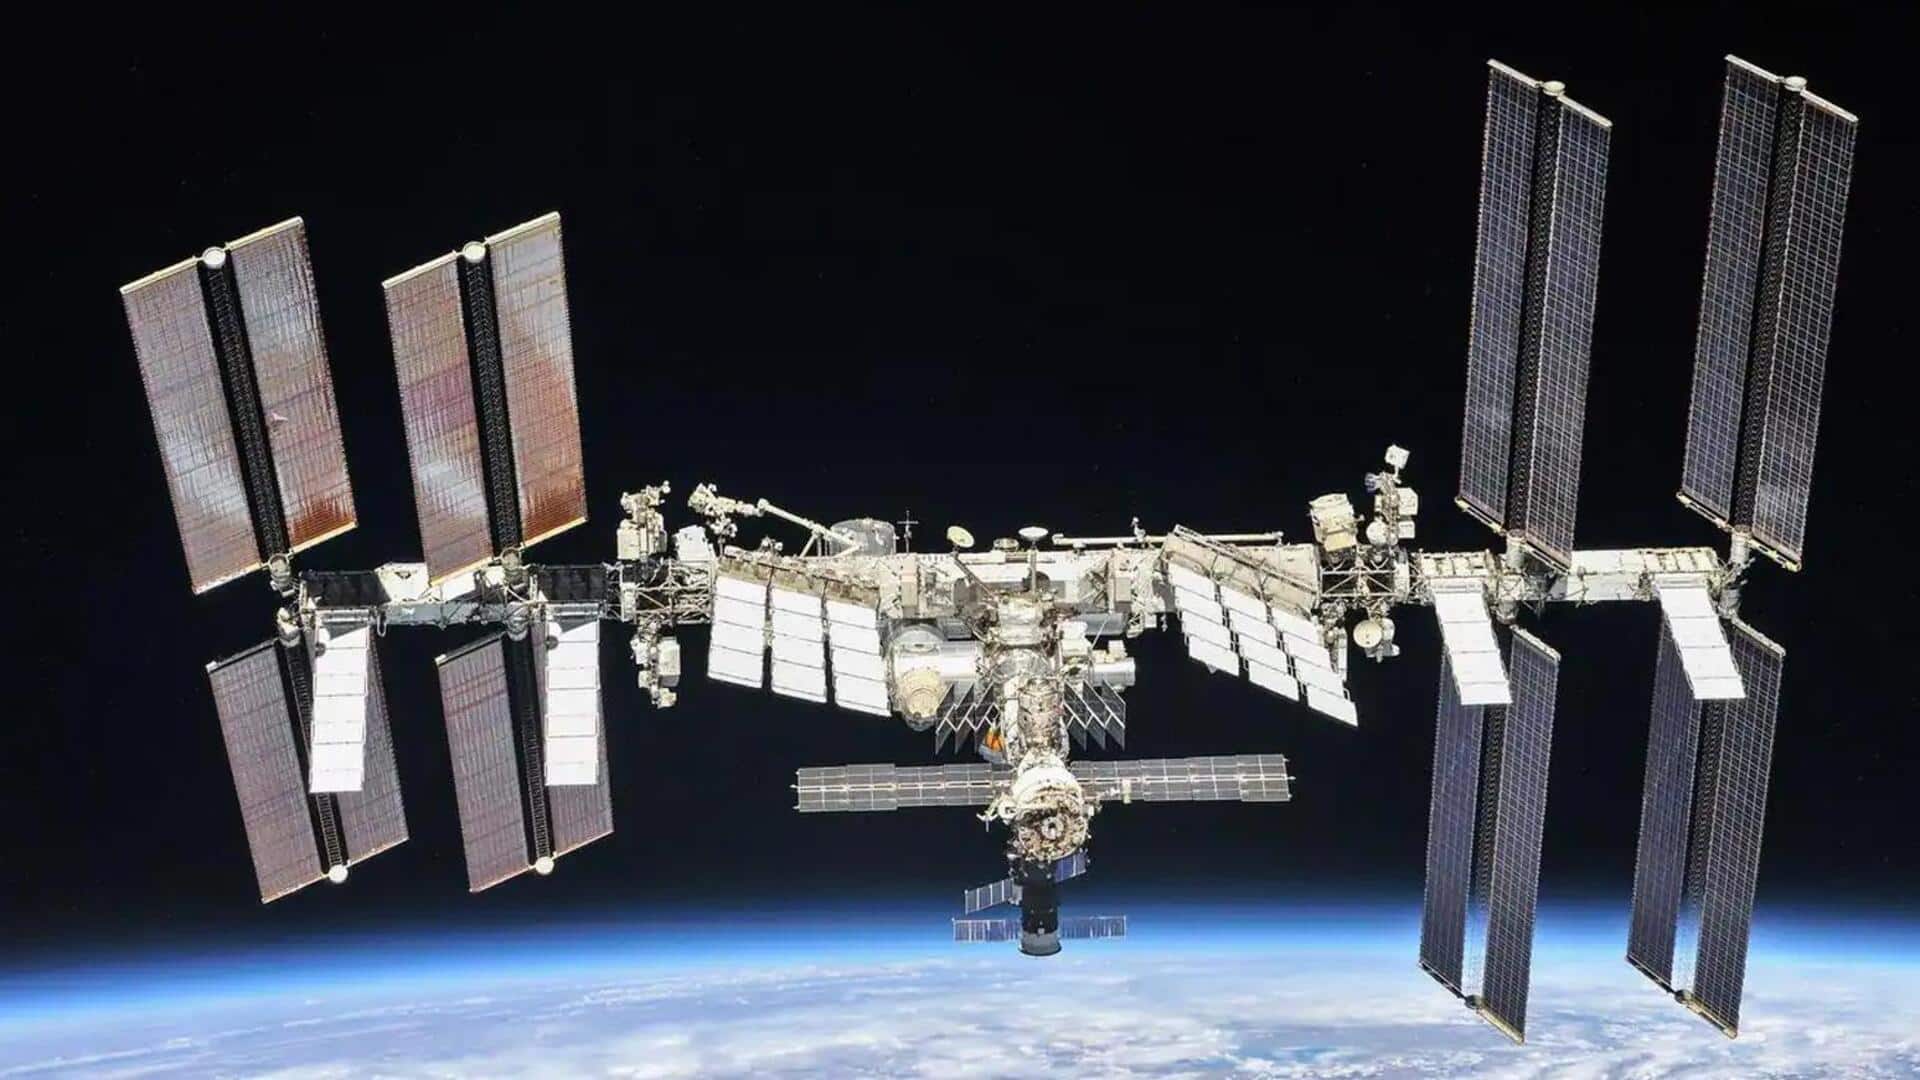 भारतीय अंतरिक्ष स्टेशन के लिए ISRO ने शुरू किया काम, 2035 तक होगा चालू